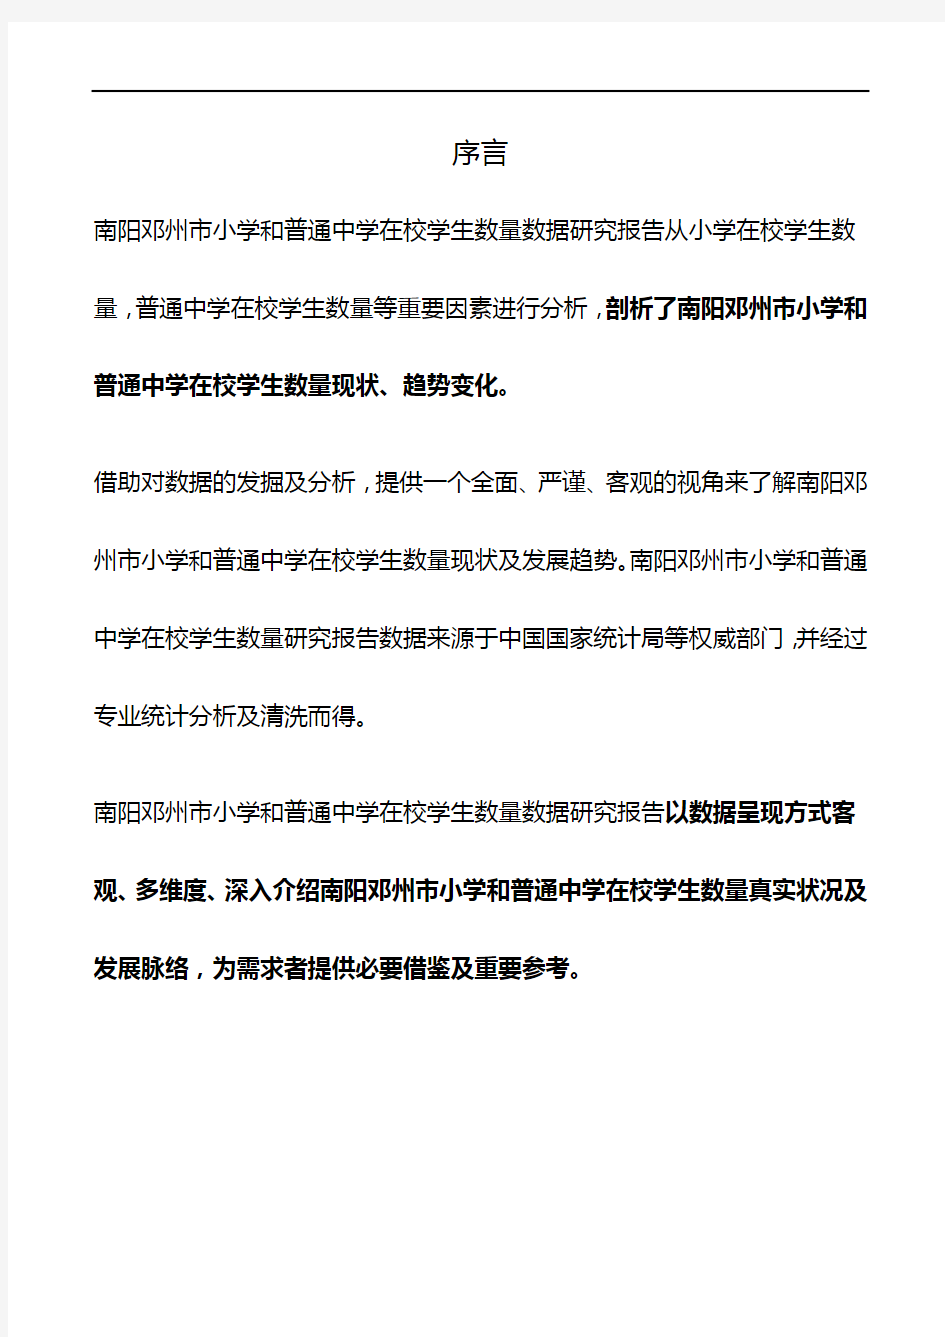 河南省南阳邓州市小学和普通中学在校学生数量数据研究报告2019版